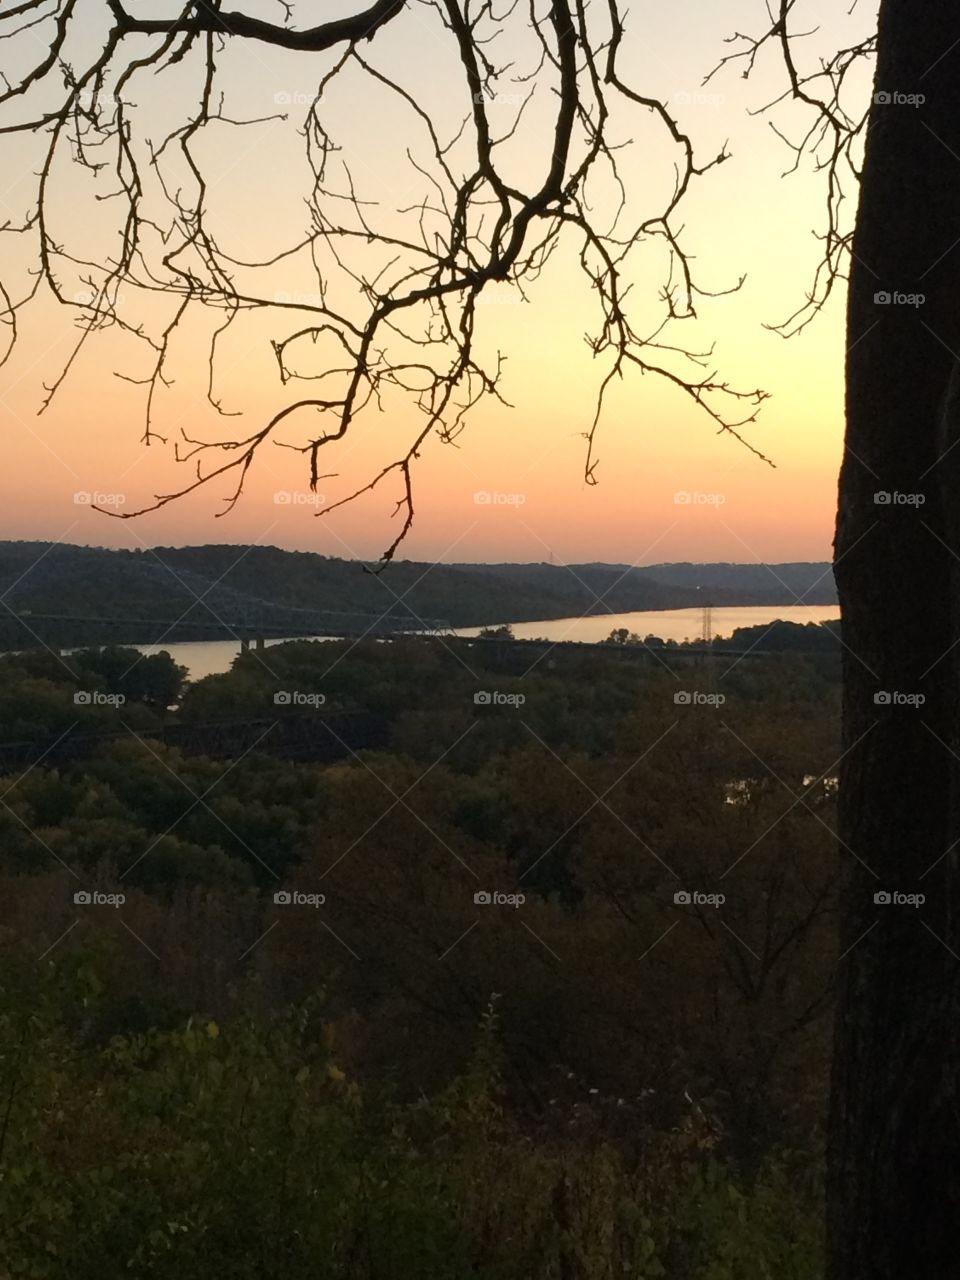 Ohio Sunset 